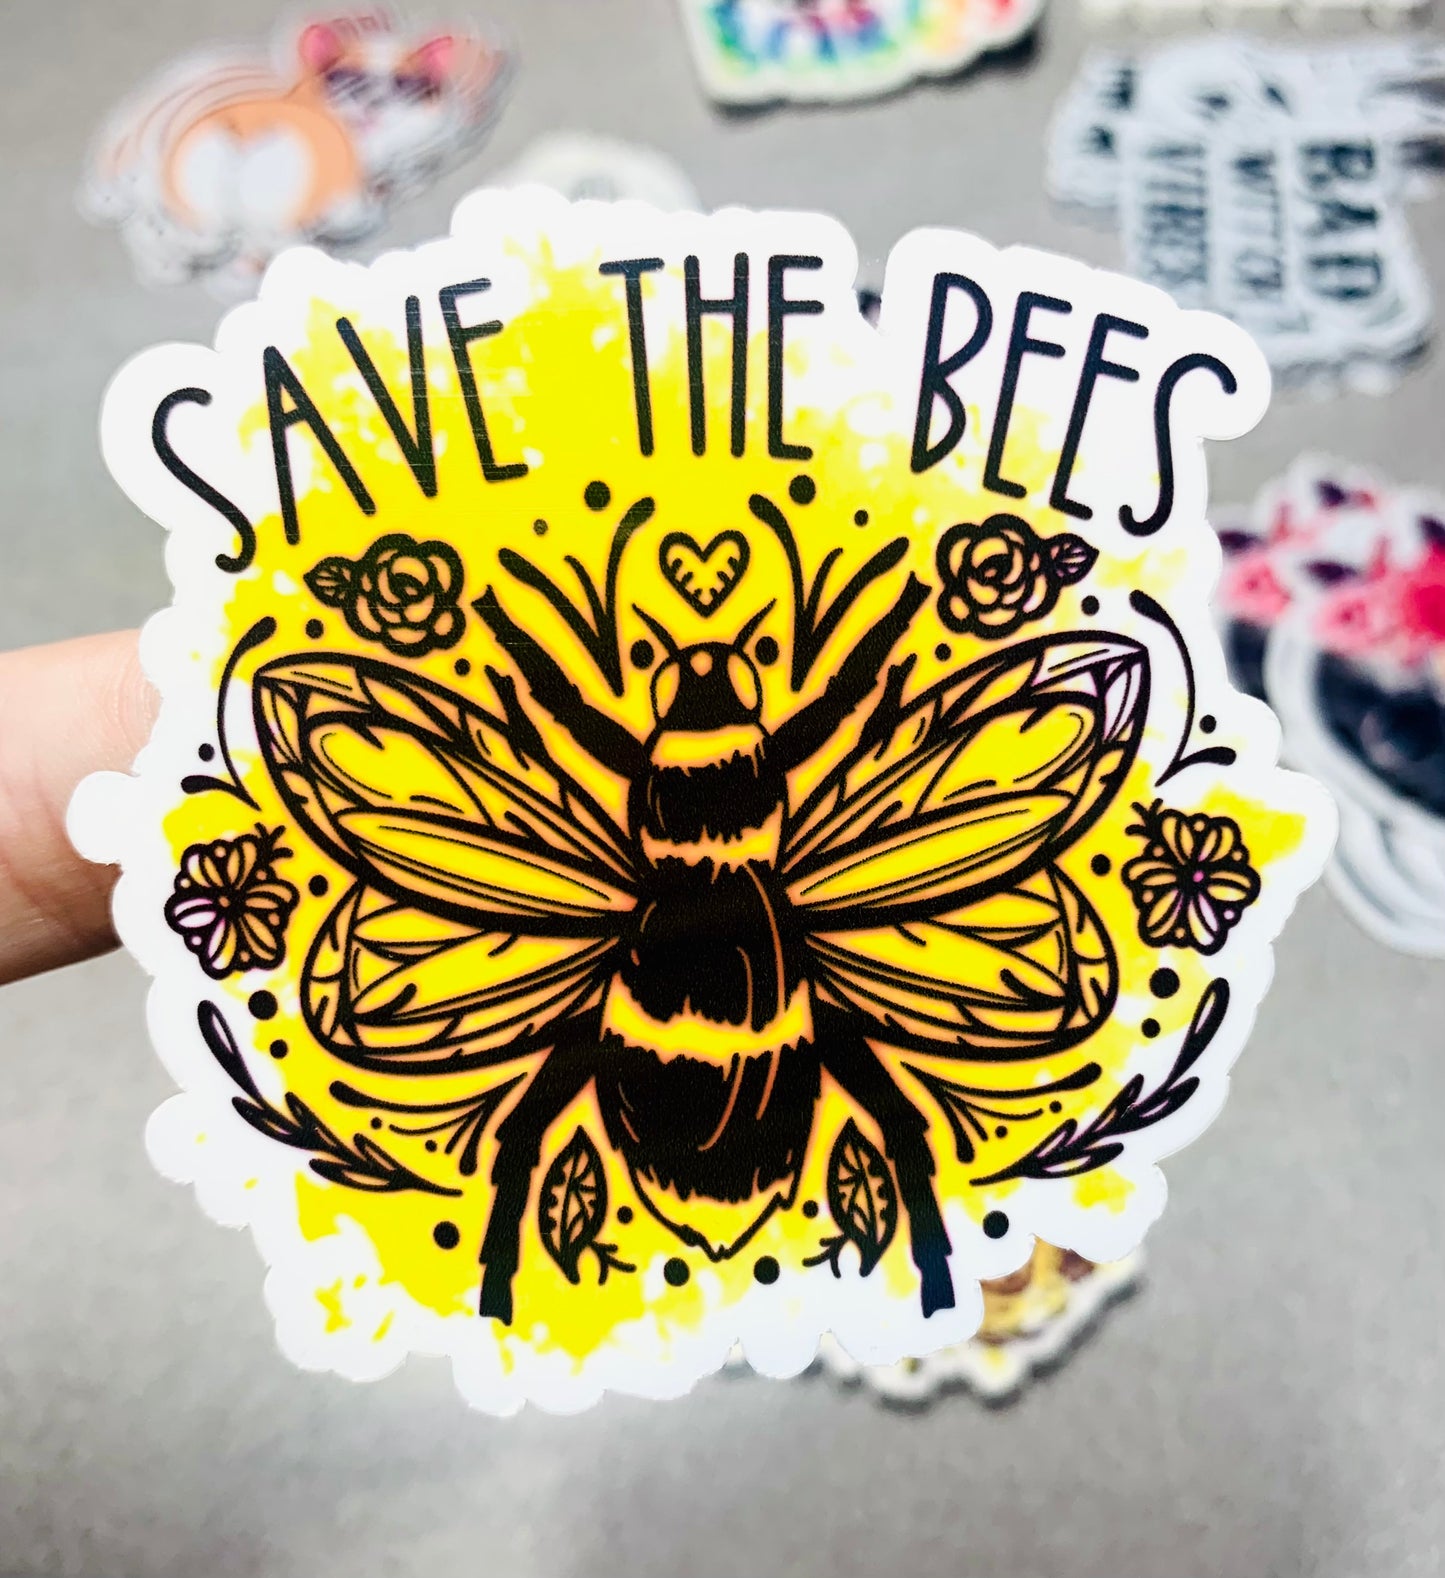 Save the Bees Vinyl Sticker - Scent Tree Studio